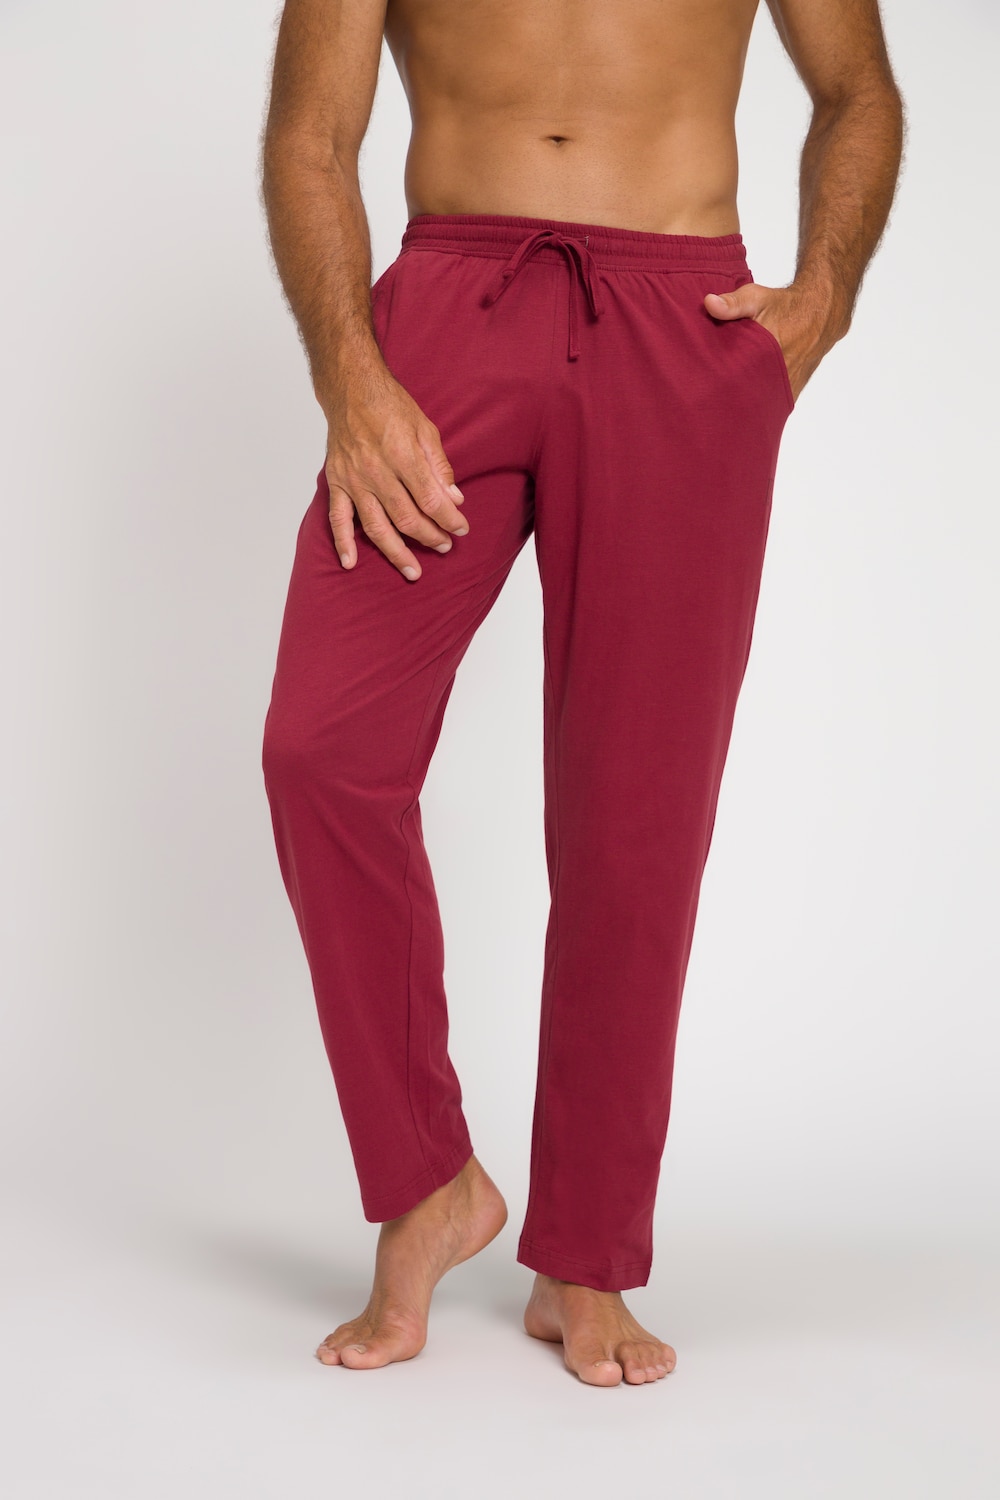 Grote Maten pyjamabroek, Heren, rood, Maat: 7XL, JP1880